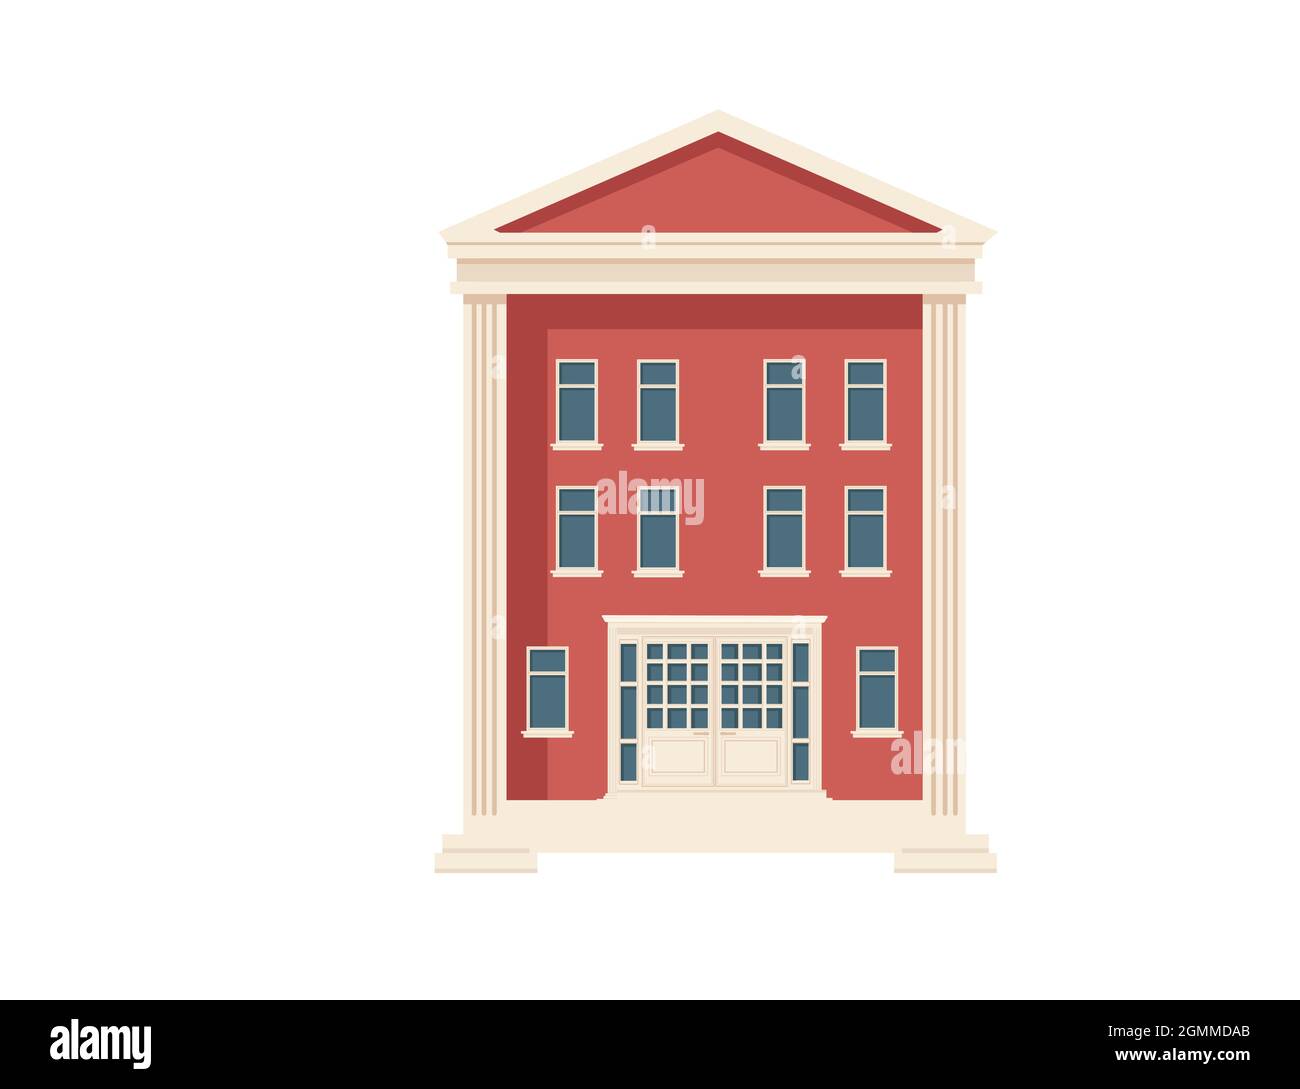 Rouge couleur classique architecture américaine gouvernement bâtiment illustration vectorielle sur fond blanc Illustration de Vecteur